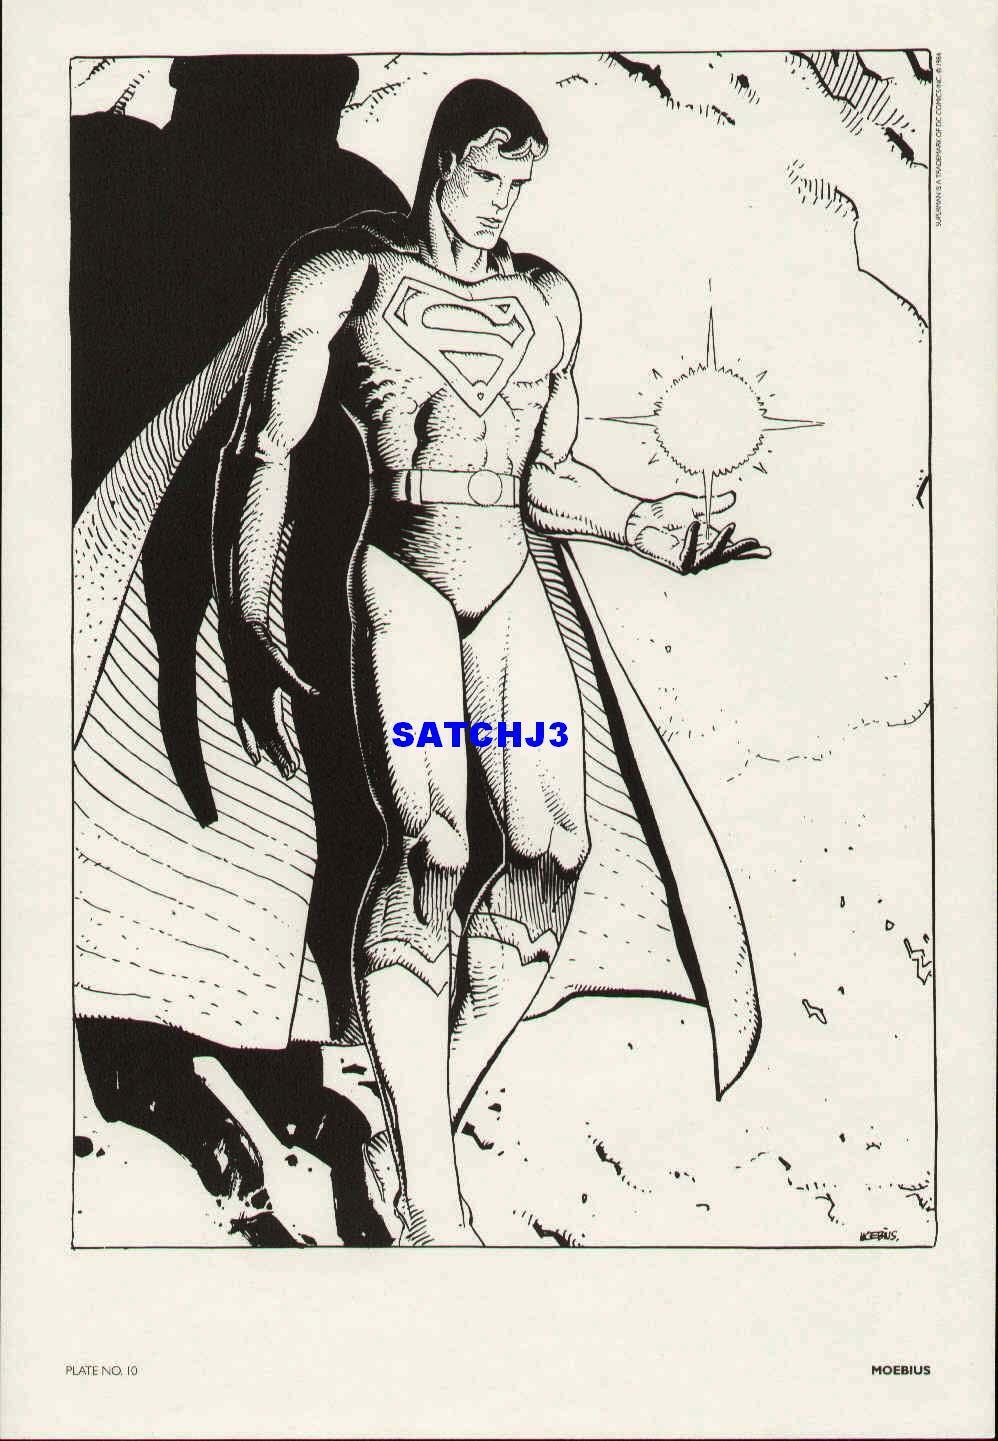 MOEBIUS SUPERMAN 1980s DC COMICS FINE ART PRINT MOBIUS JEAN GIRAUD MAN OF STEEL